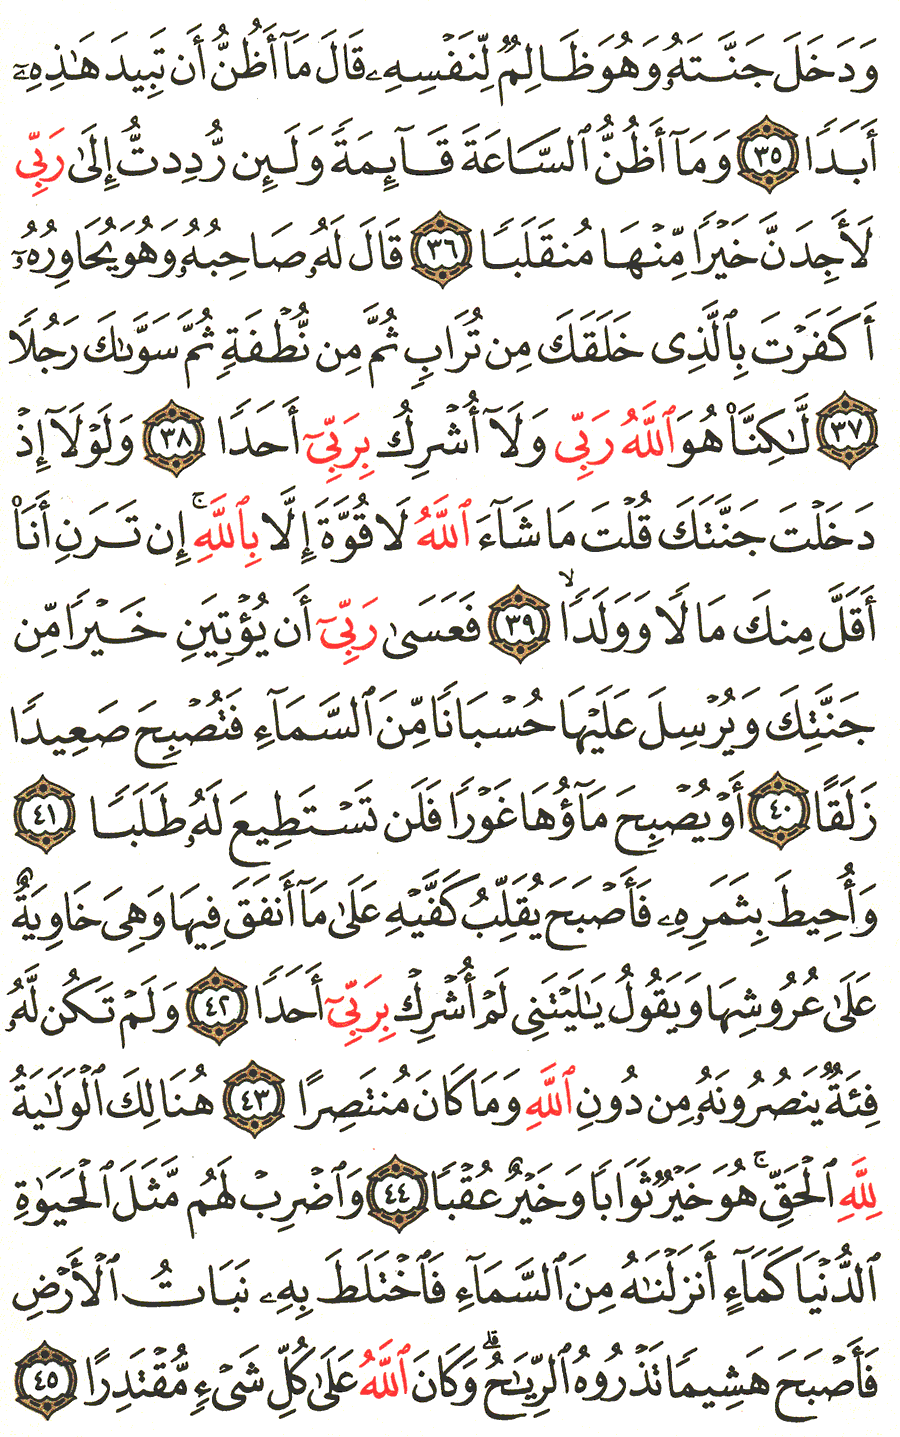 الصفحة رقم 298  من القرآن الكريم مكتوبة من المصحف